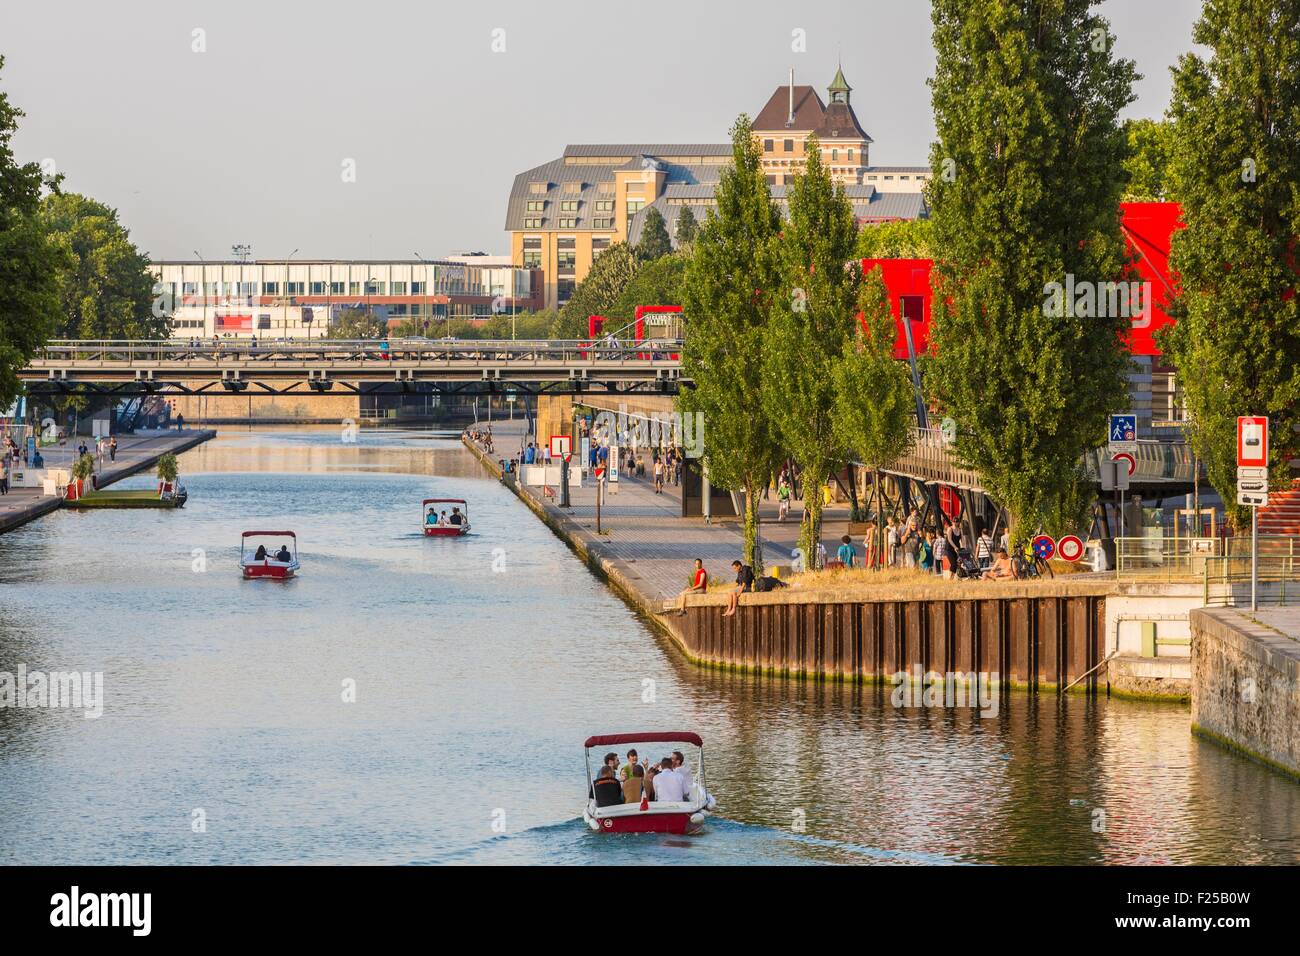 France, Paris, the Parc de la Villette, designed by architect Bernard Tschumi in 1983, the Ourcq canal Stock Photo